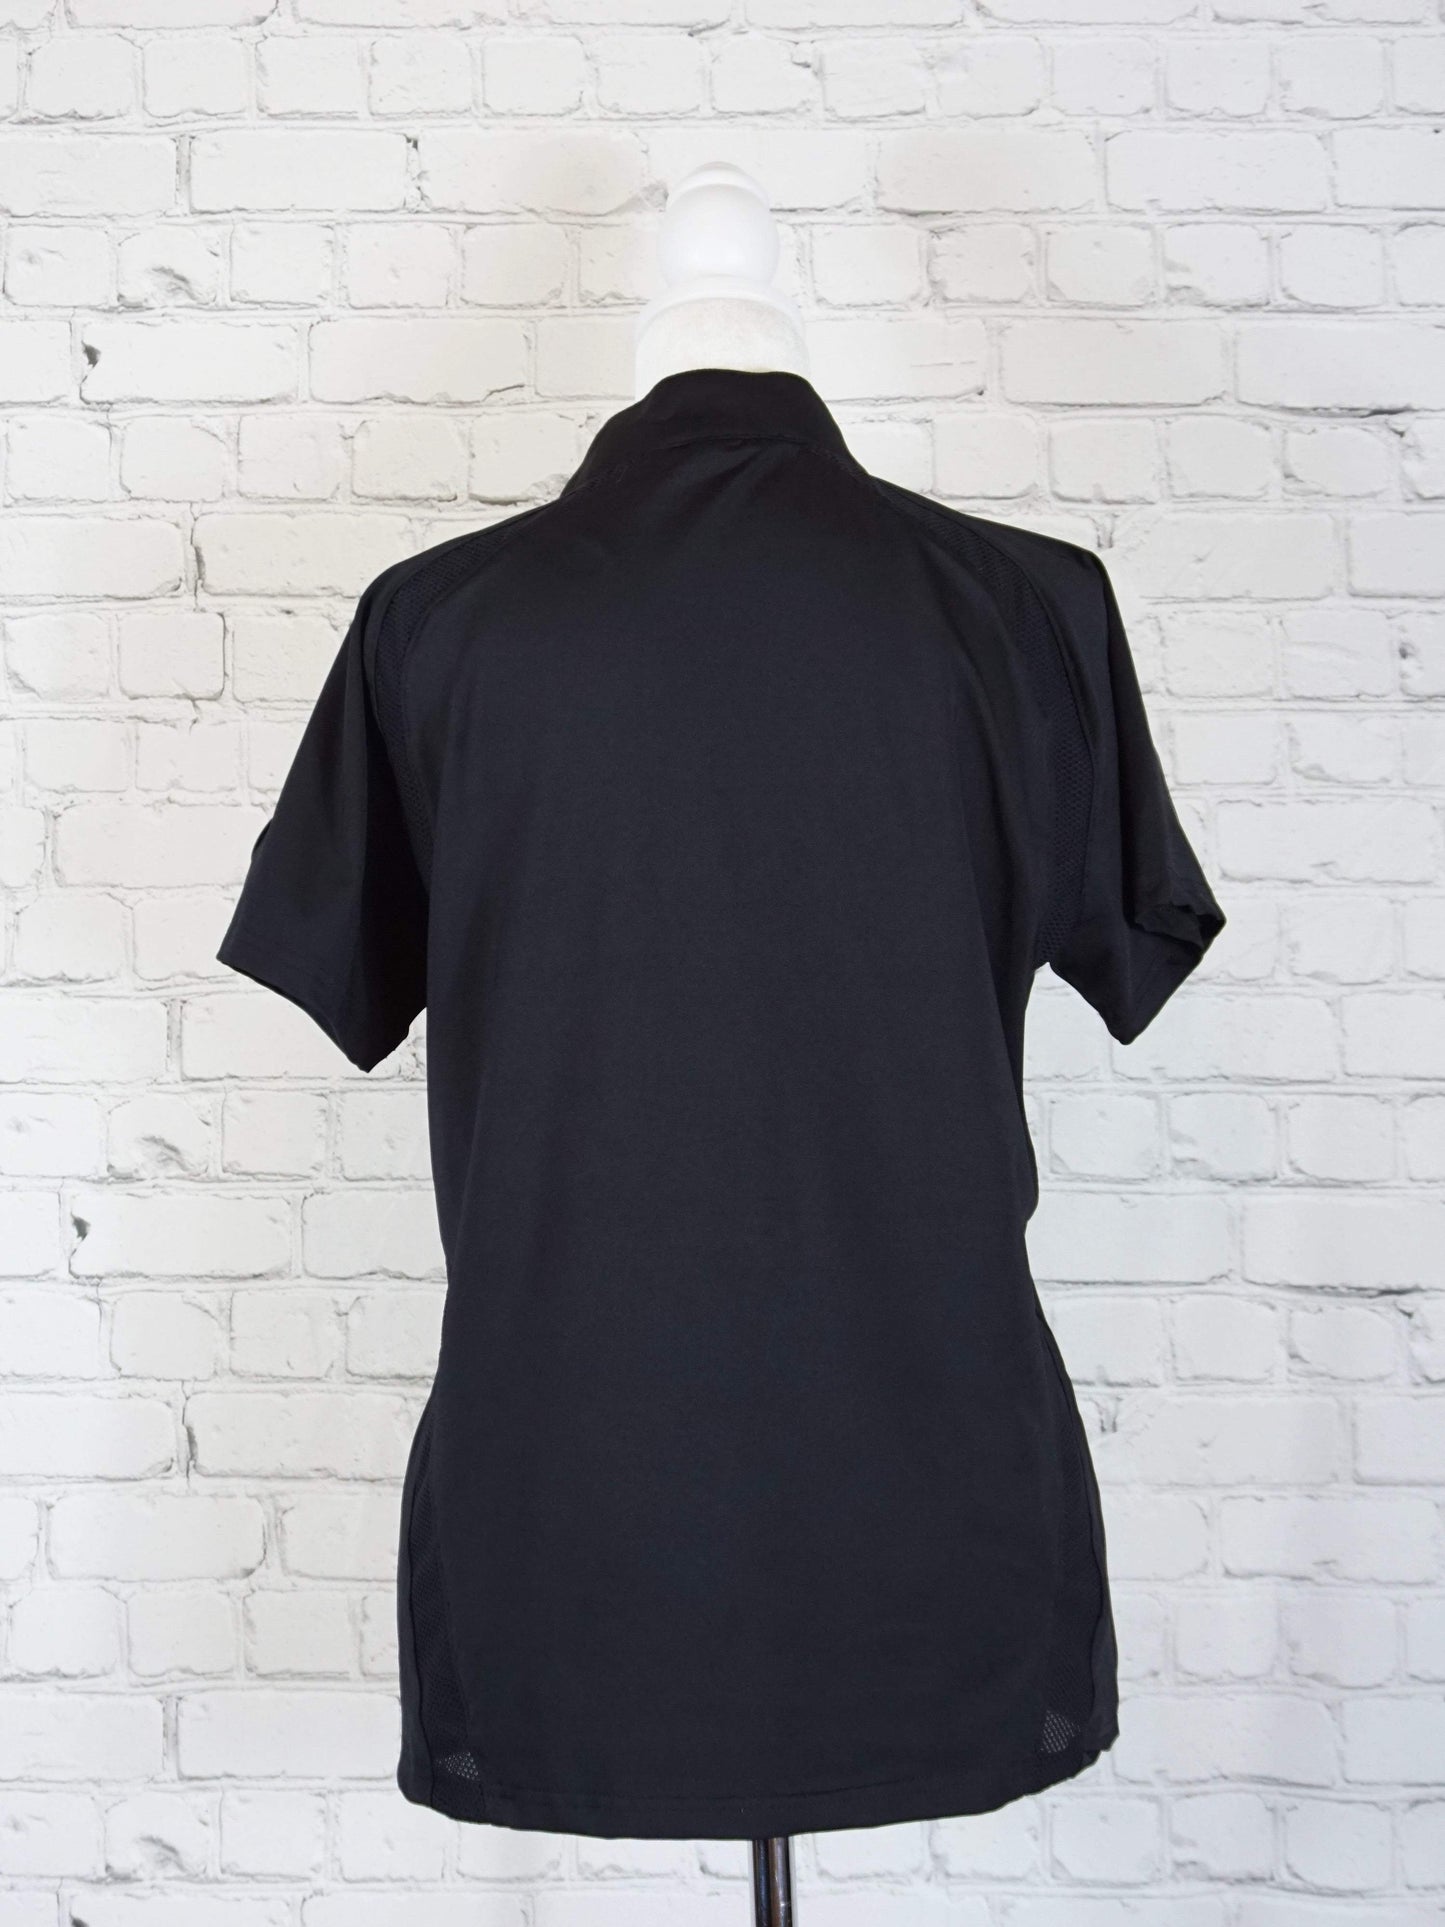 Goode Rider Premier Show Shirt in Black - XL